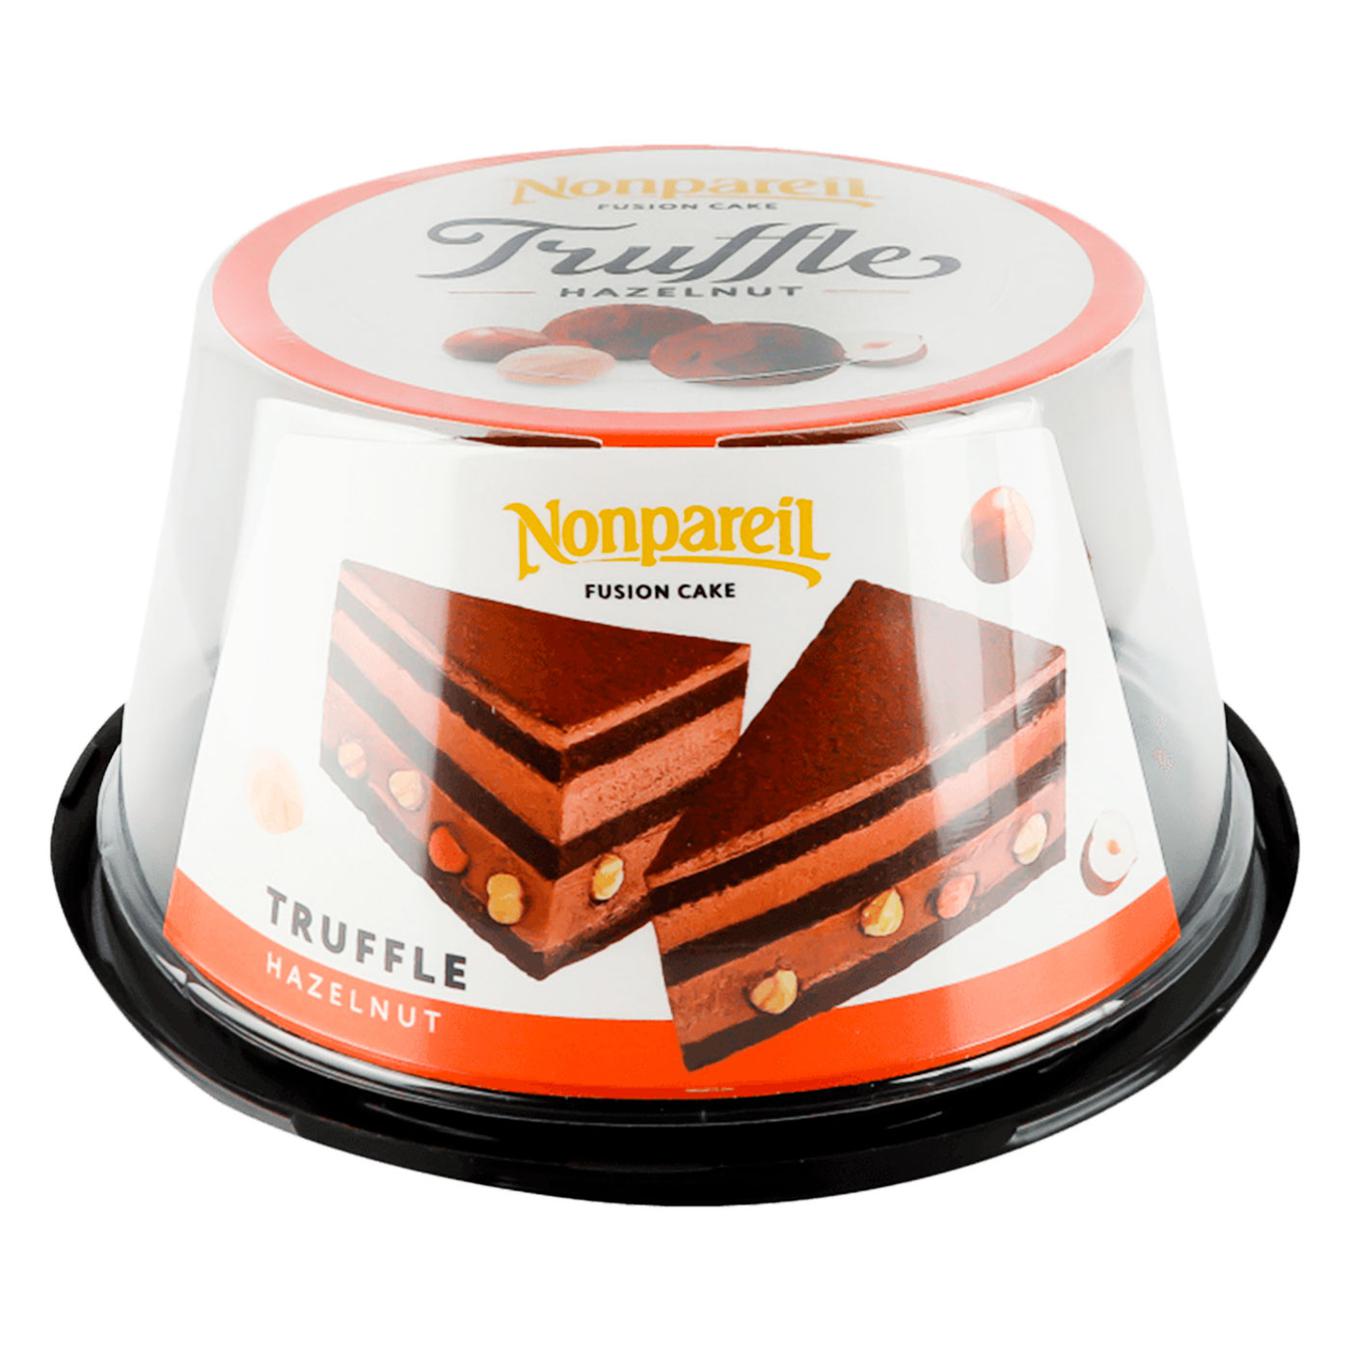 Nonpareil cake Truffle-nut 500g